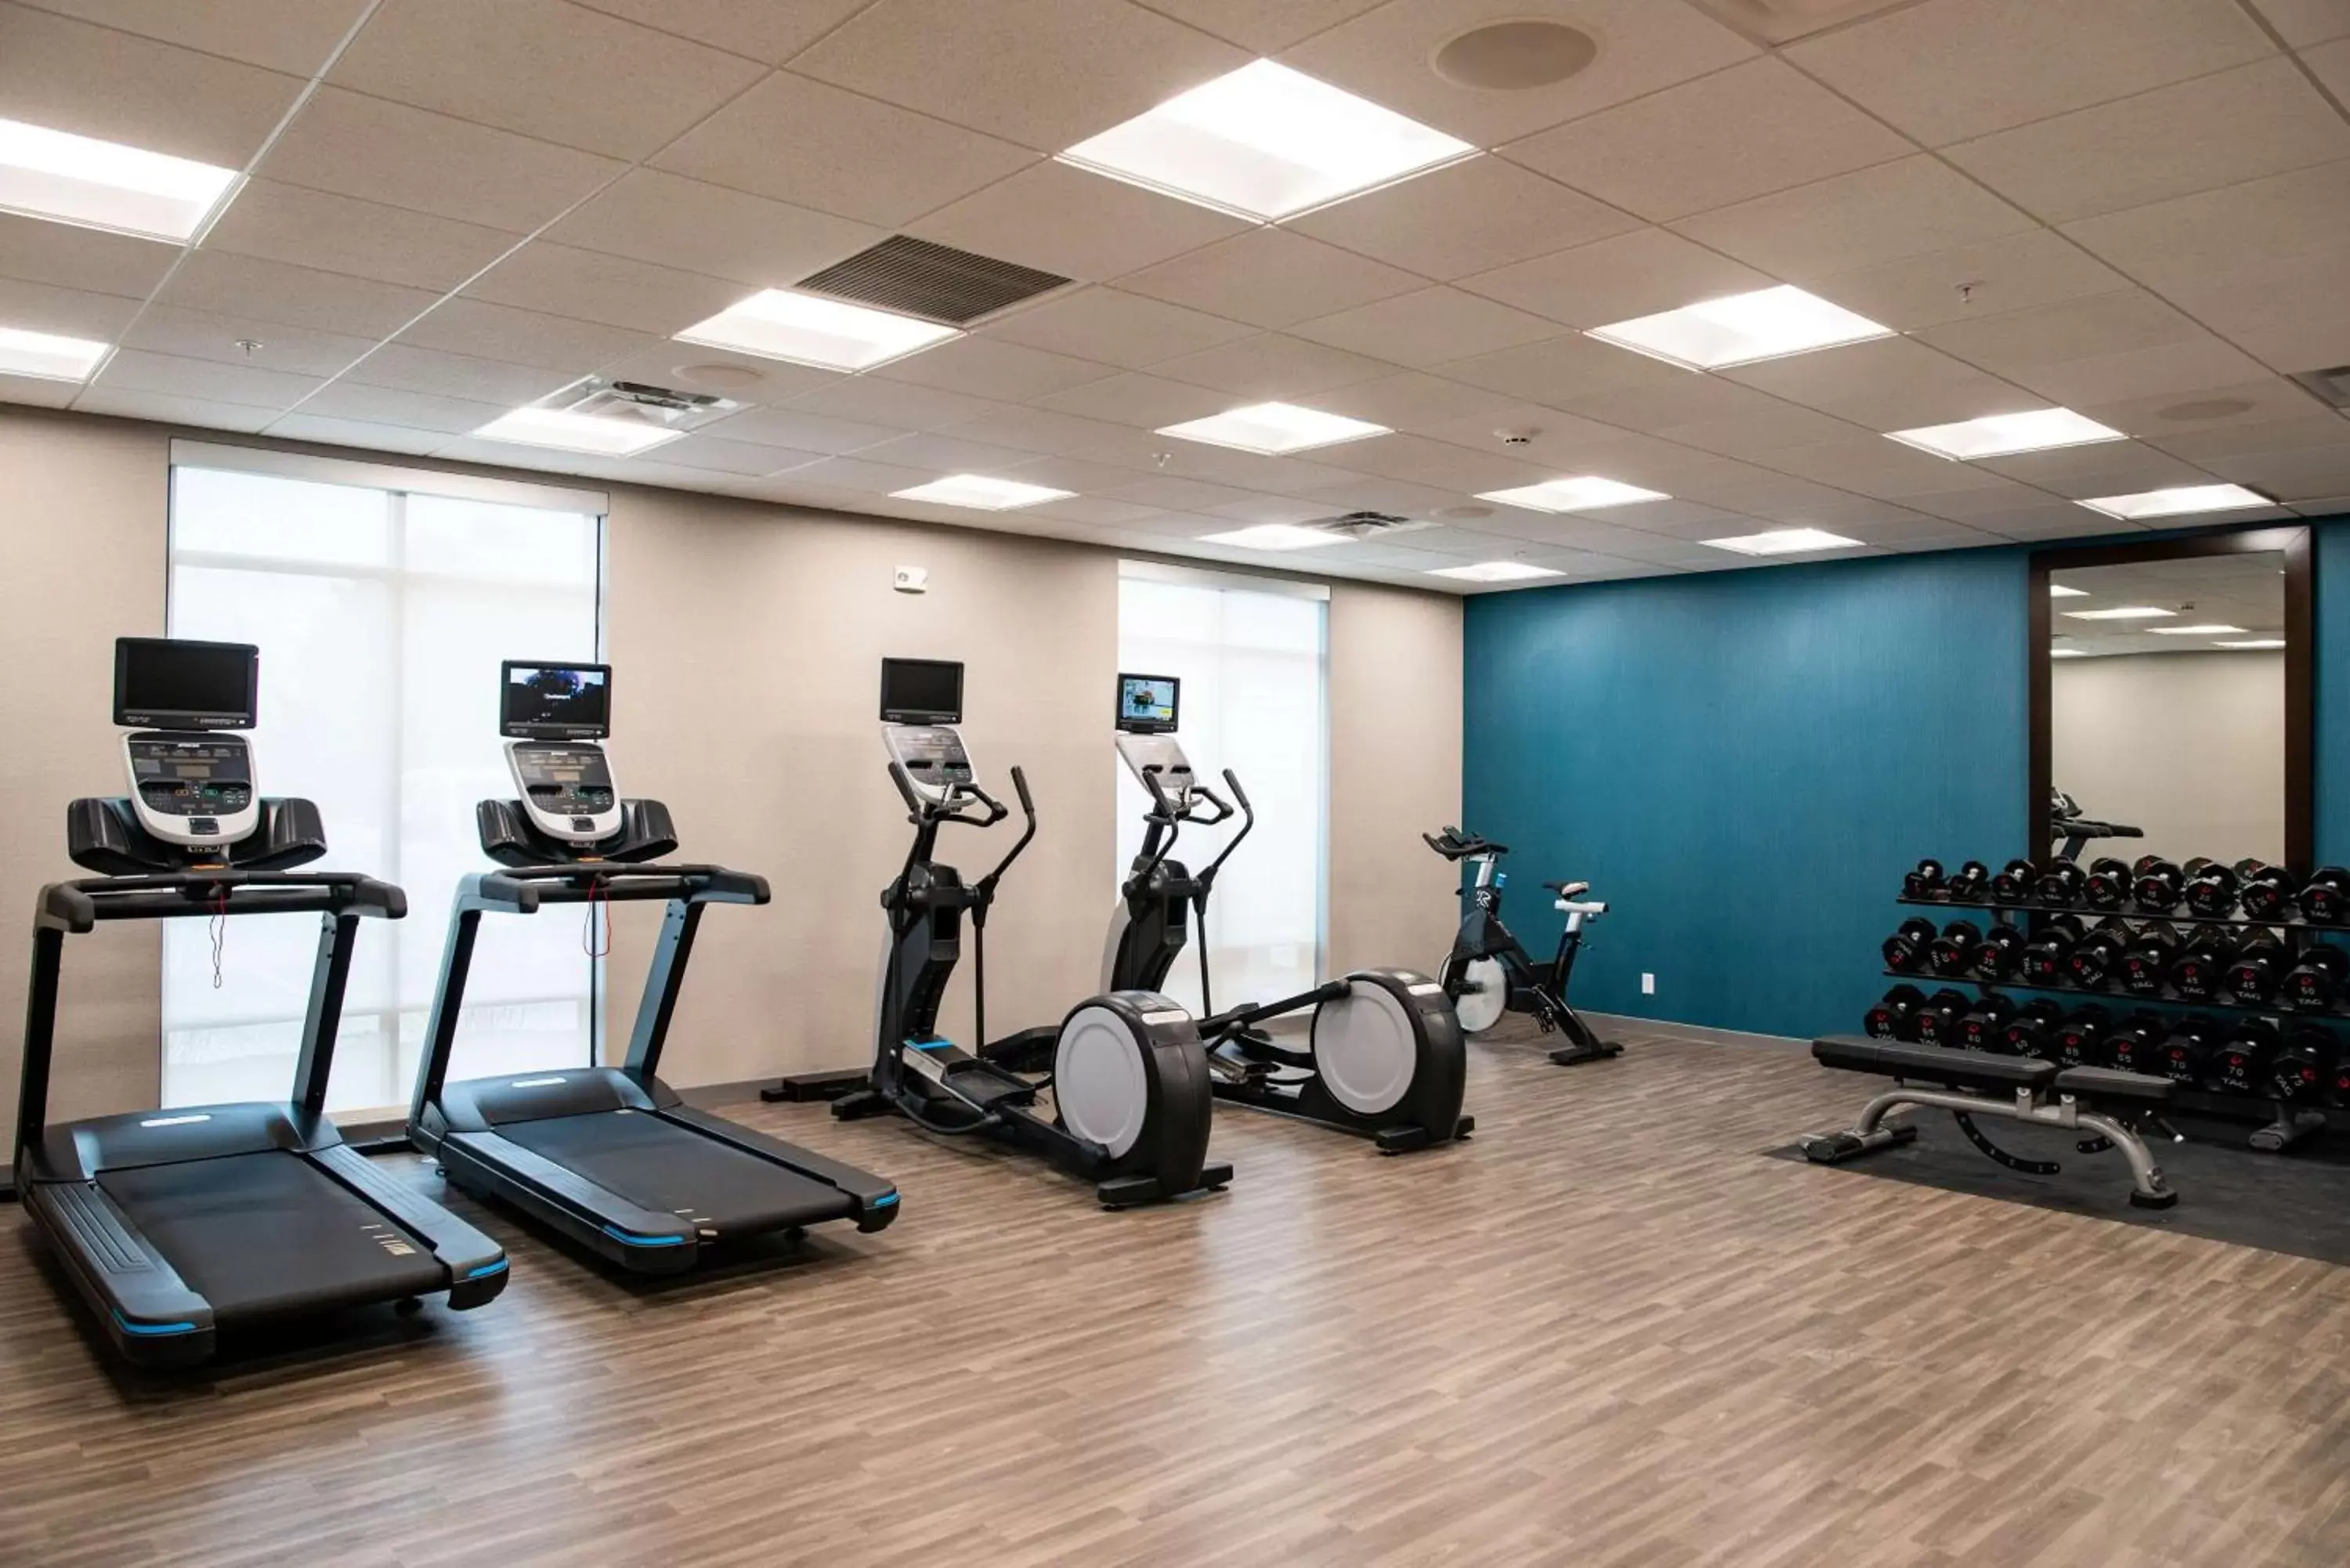 Fitness centre/facilities, Fitness Center/Facilities in Hampton Inn Paris IL, IL